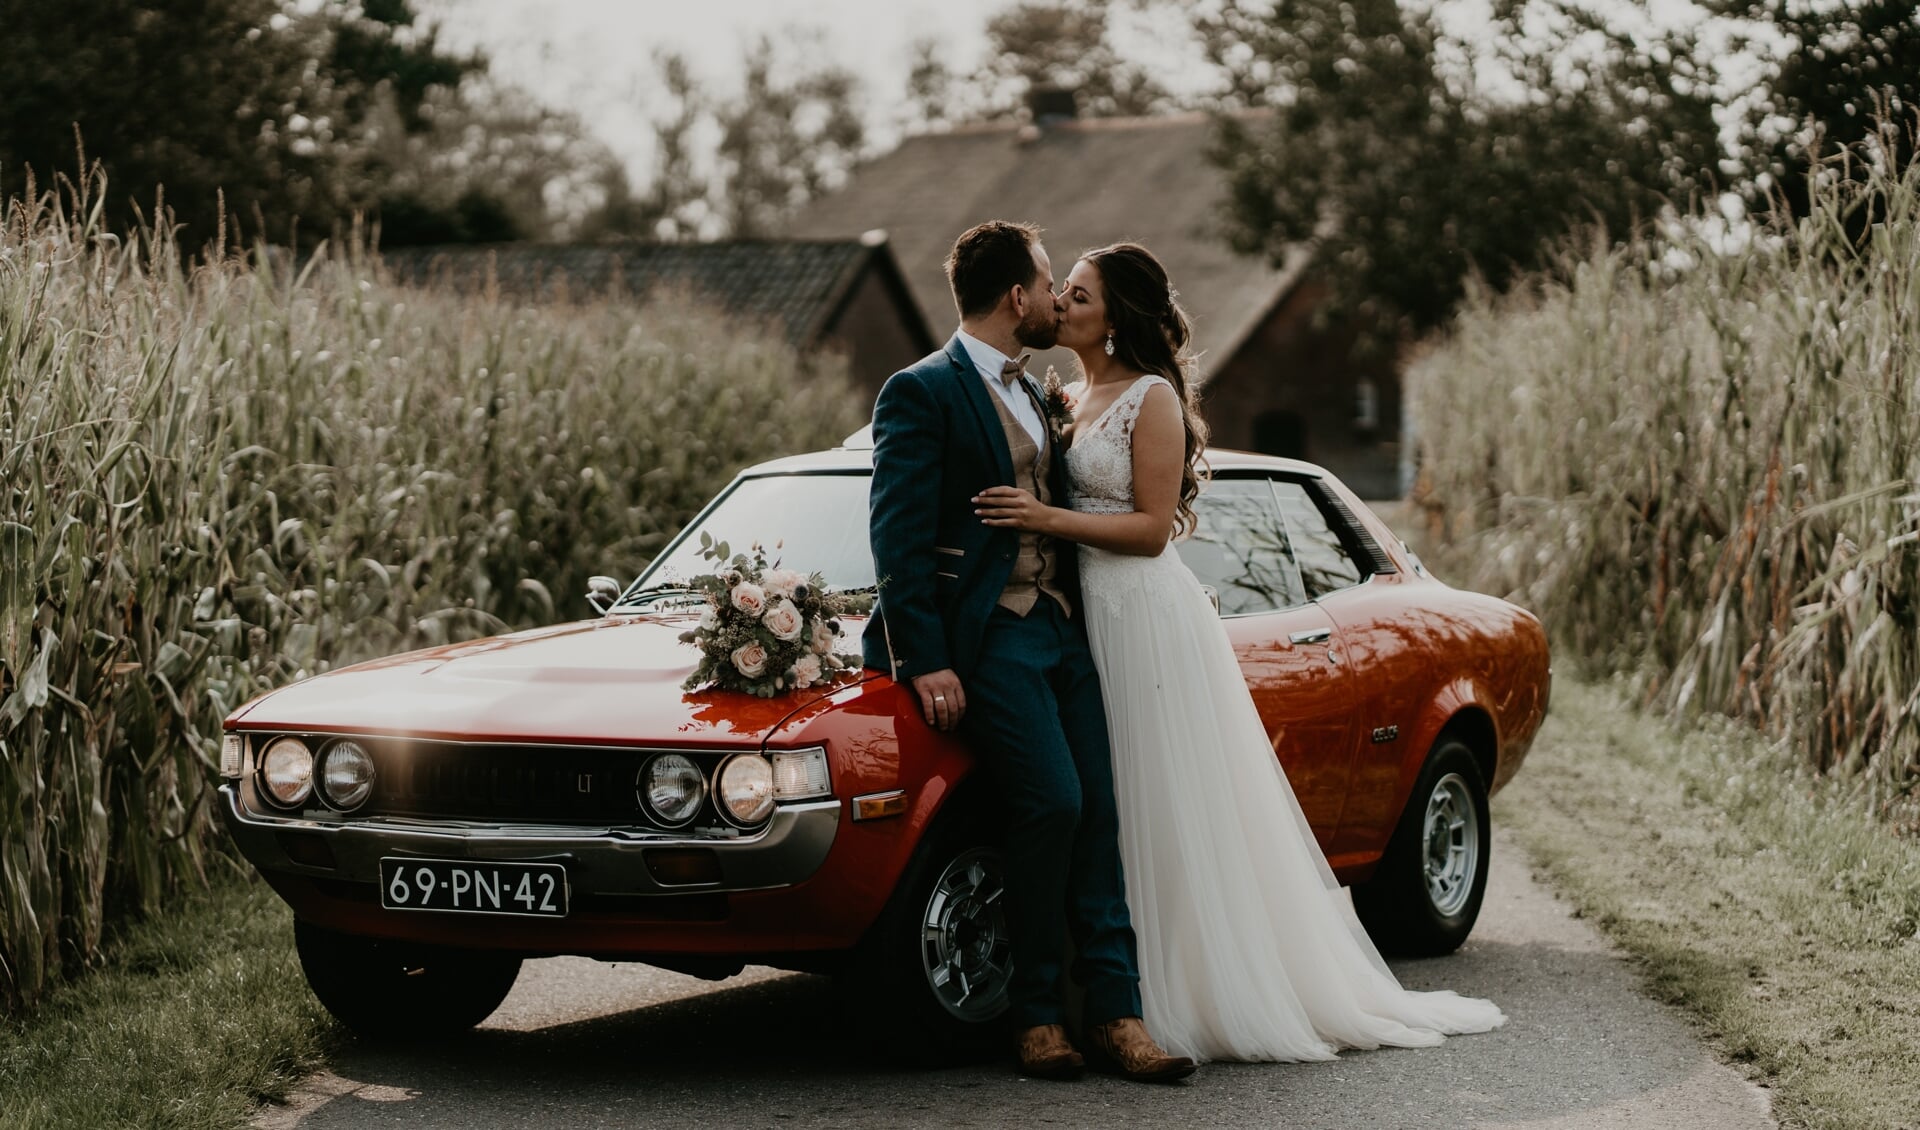 Driekus Steenbeek trouwde op11 september met Marilyn van Vulpen. De Toyota was uiteraard van de partij.